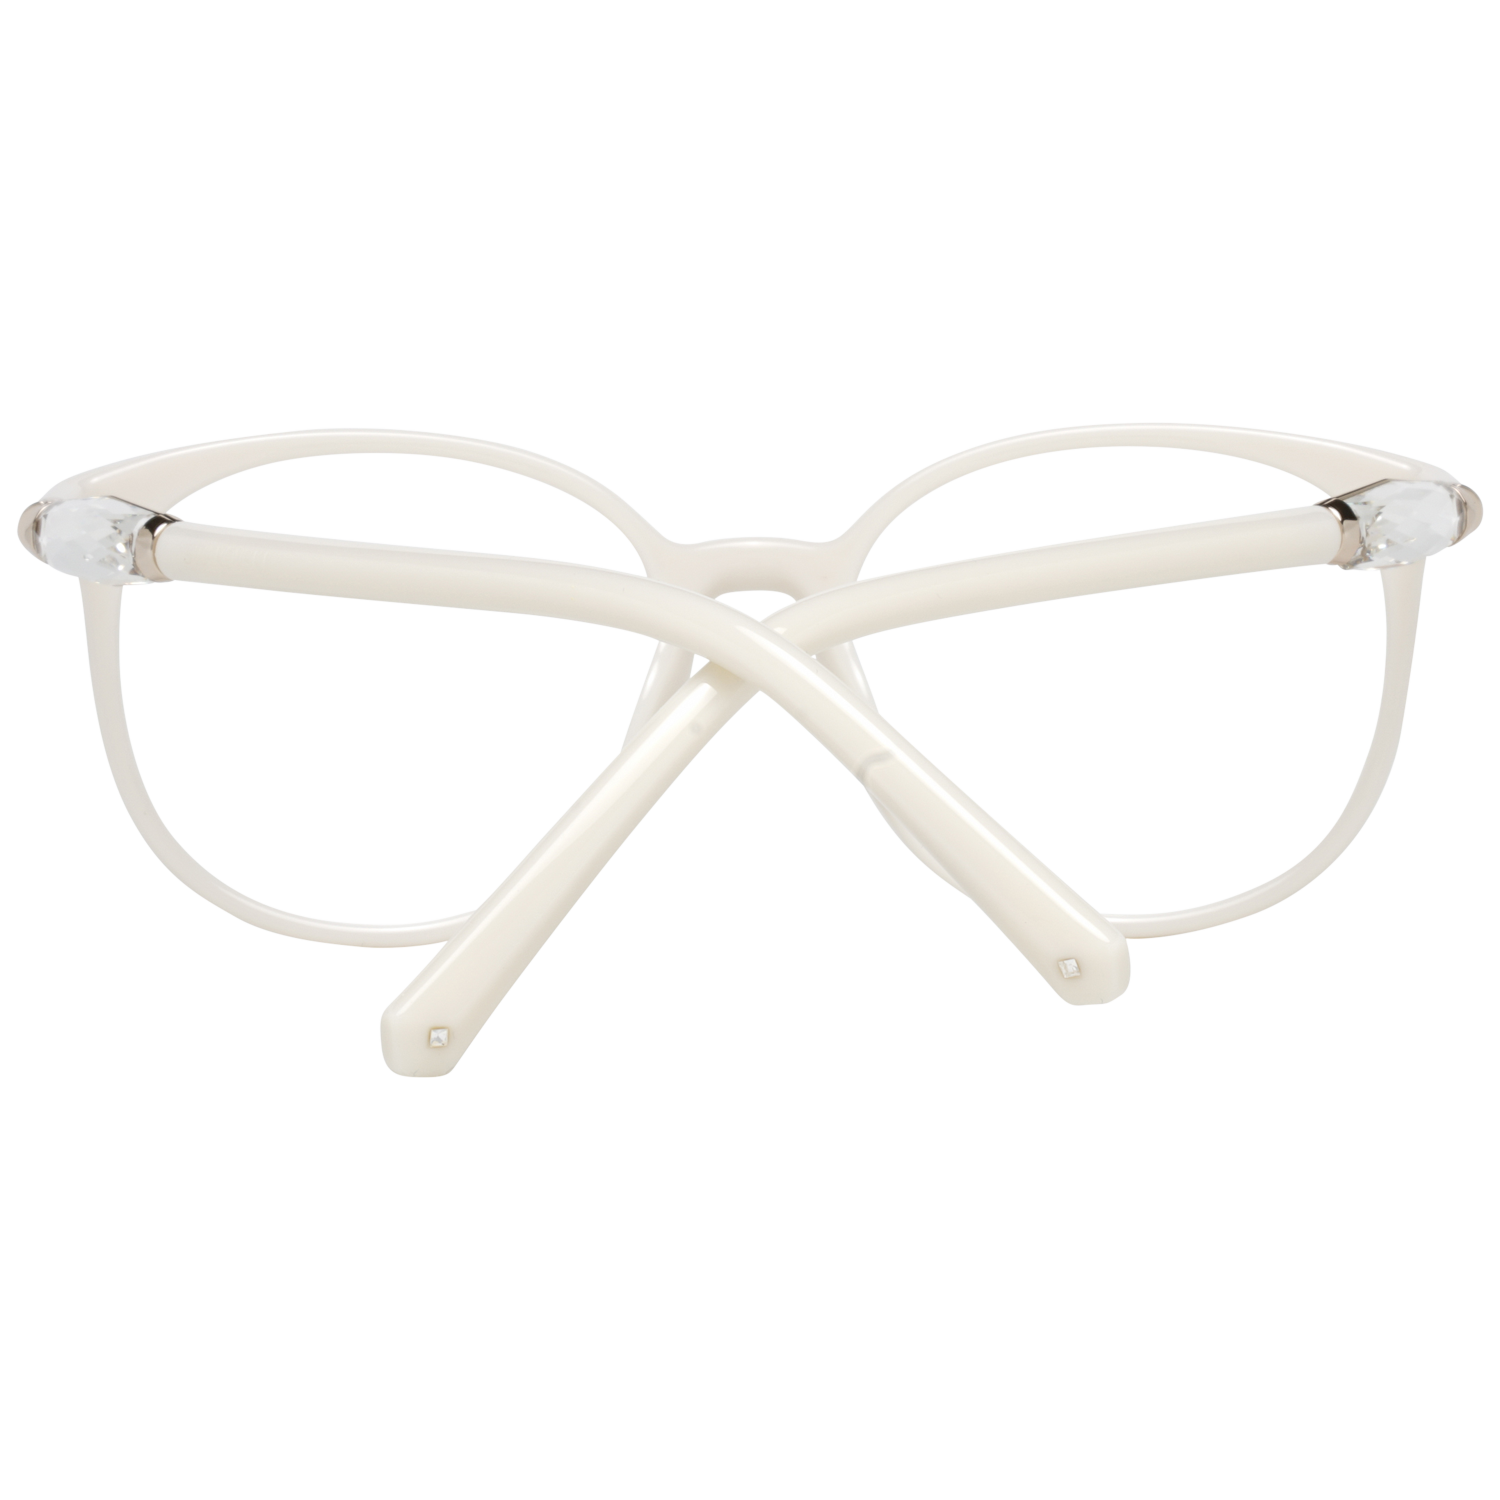 Swarovski Frames Swarovski Women Glasses Optical Frame SK5310 021 52 Eyeglasses Eyewear UK USA Australia 